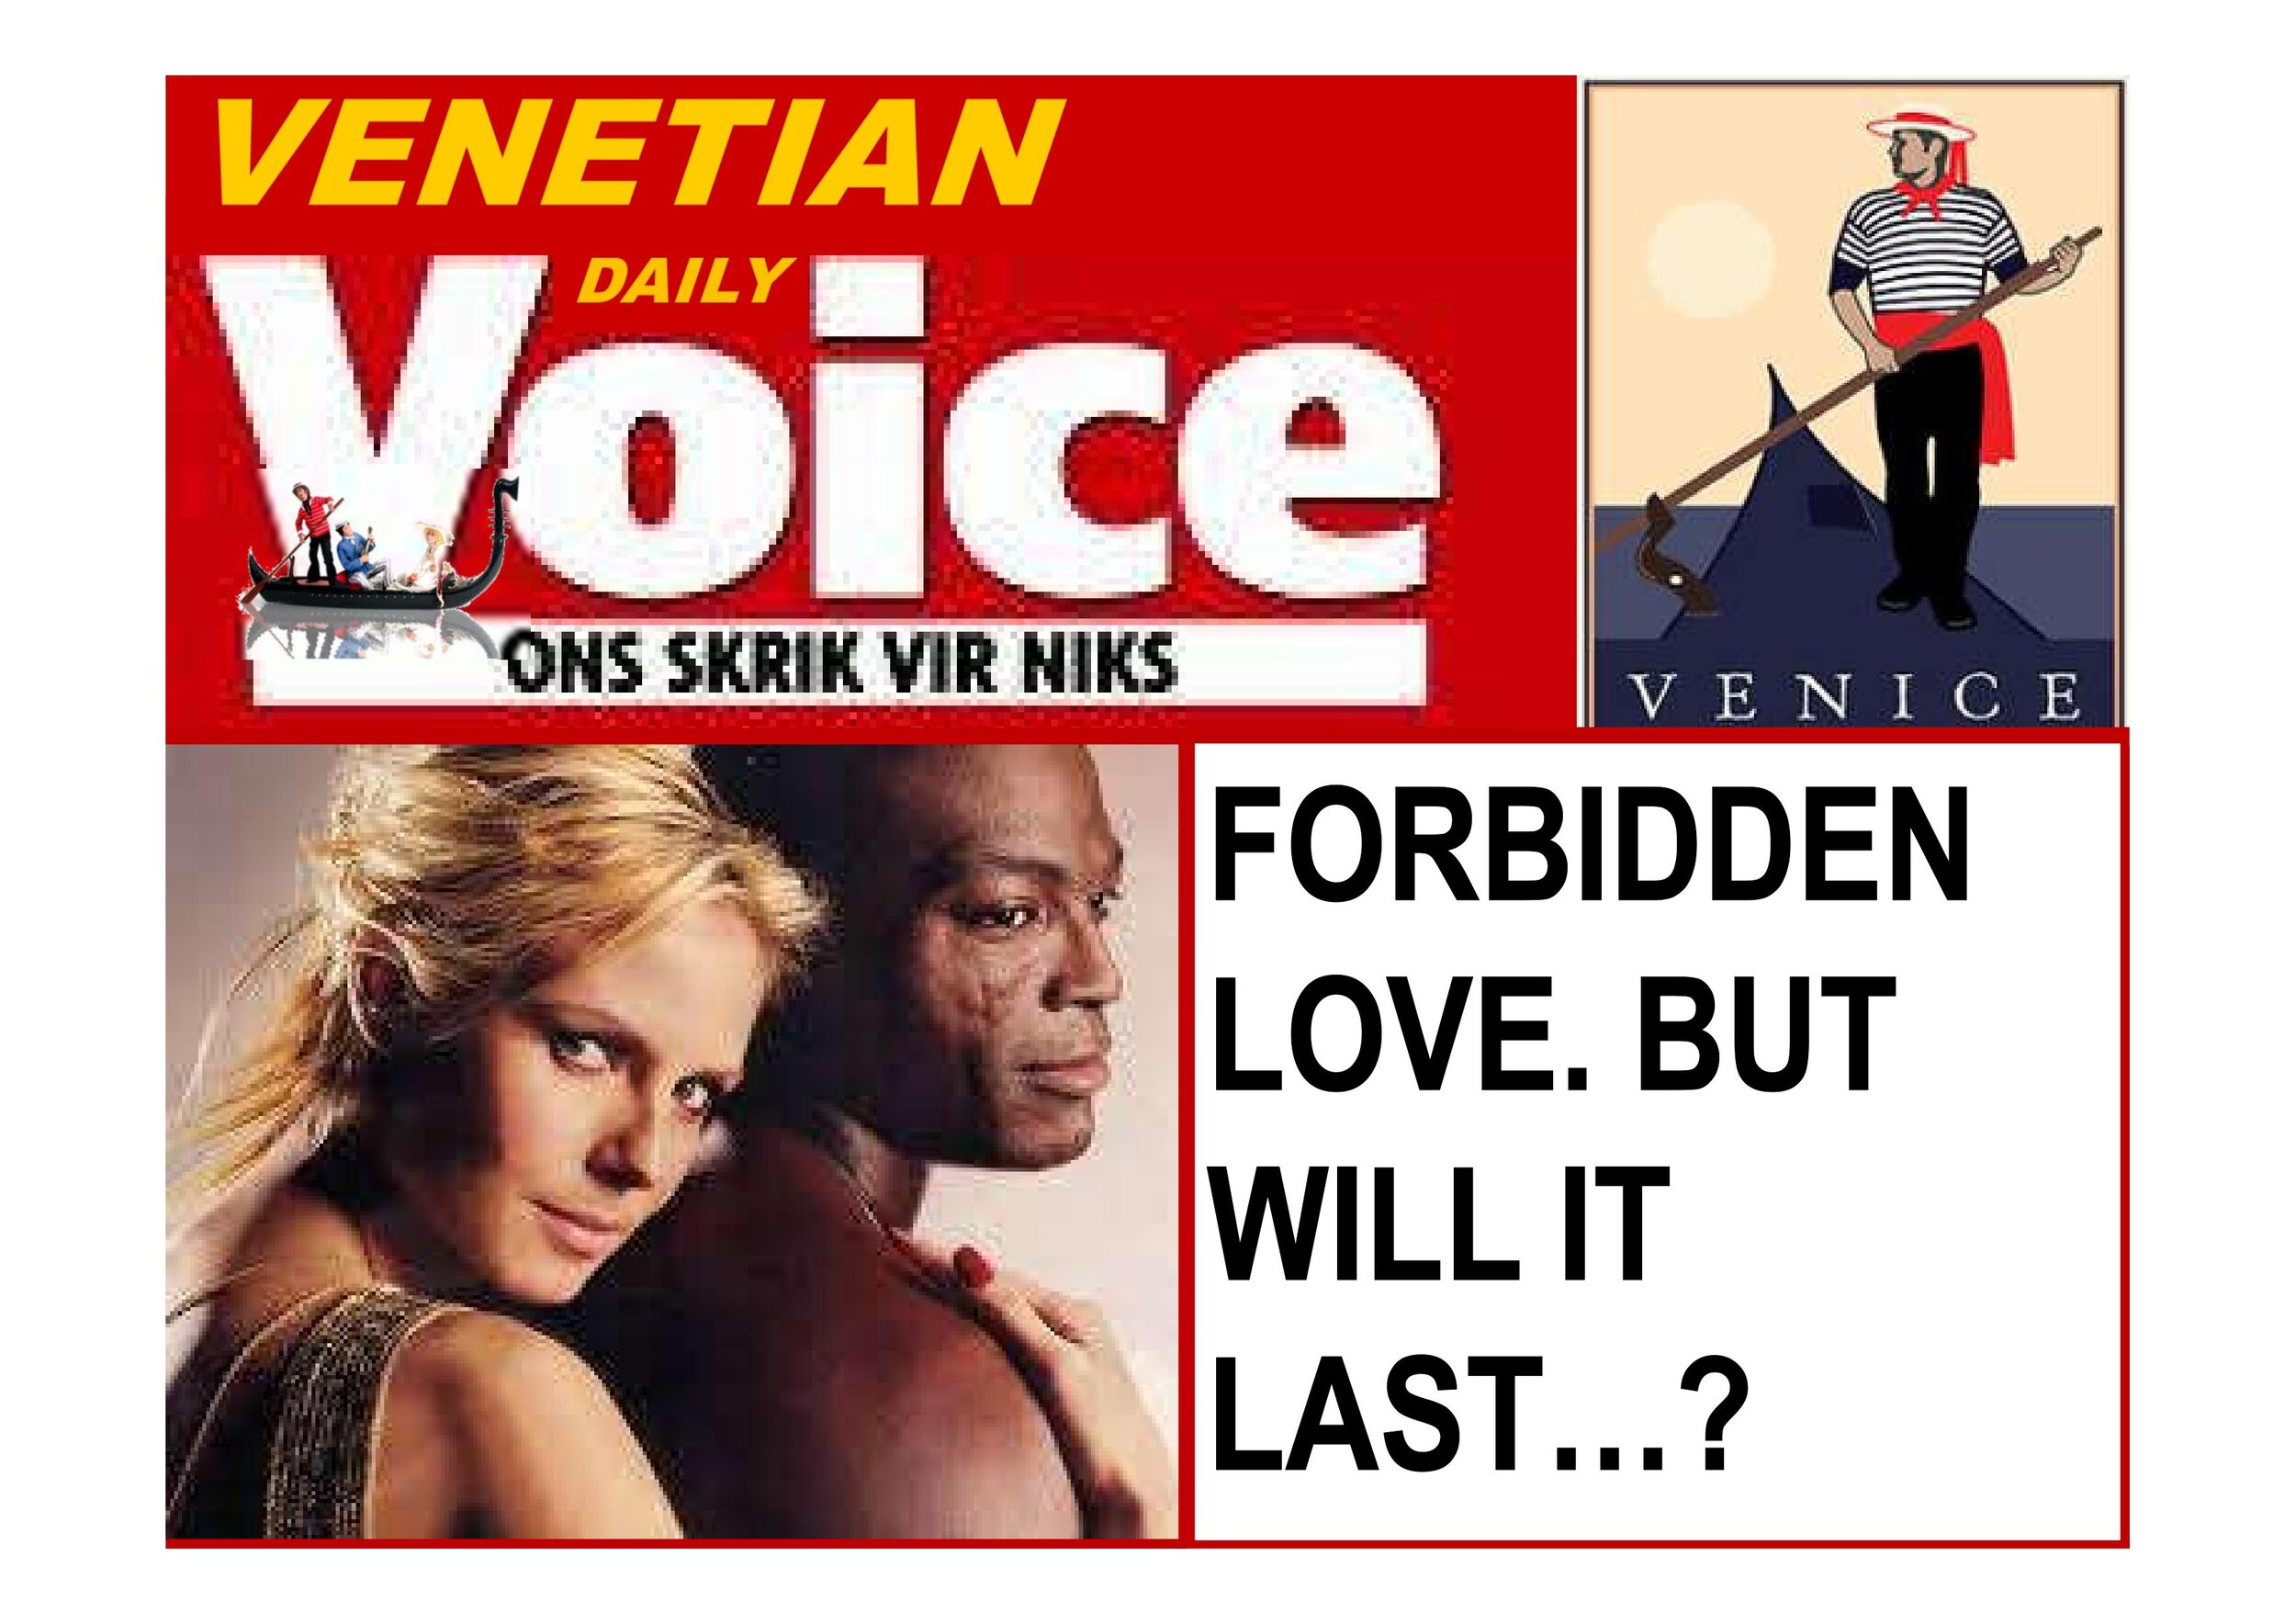  Venetian Voice: Forbidden Love 